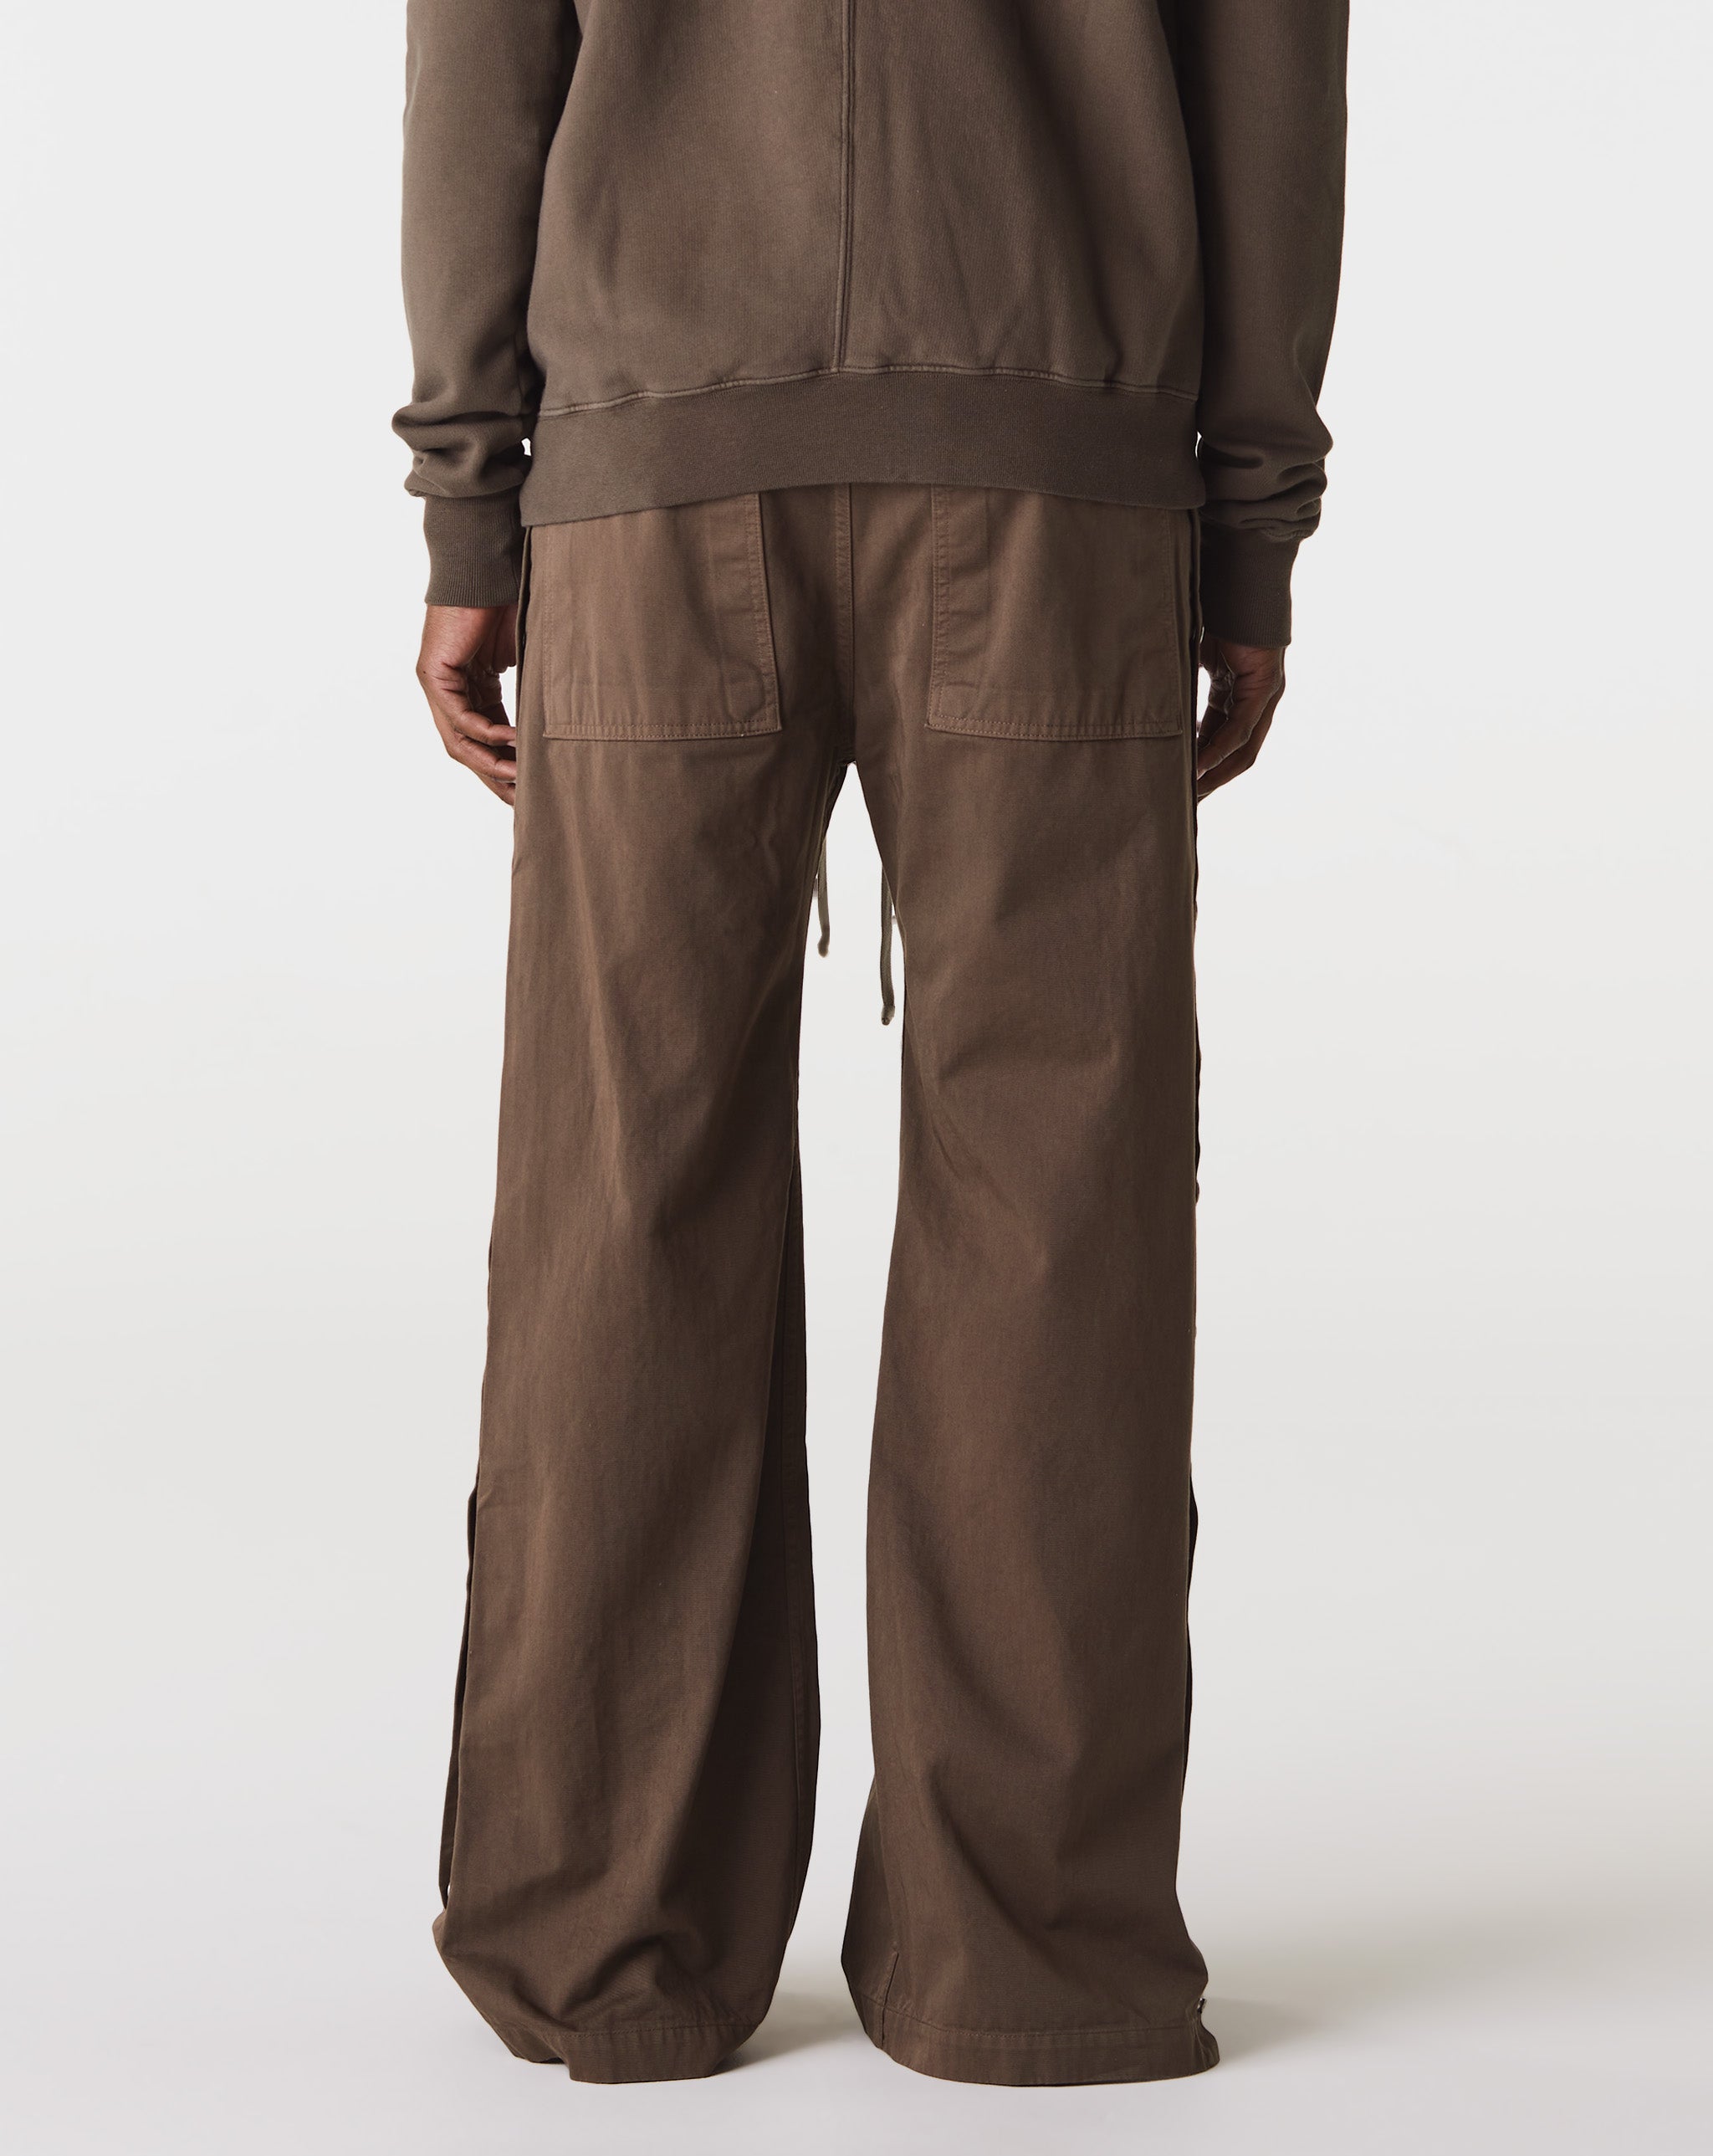 Selkie Midi Dress Pusher Pants  - Cheap 127-0 Jordan outlet